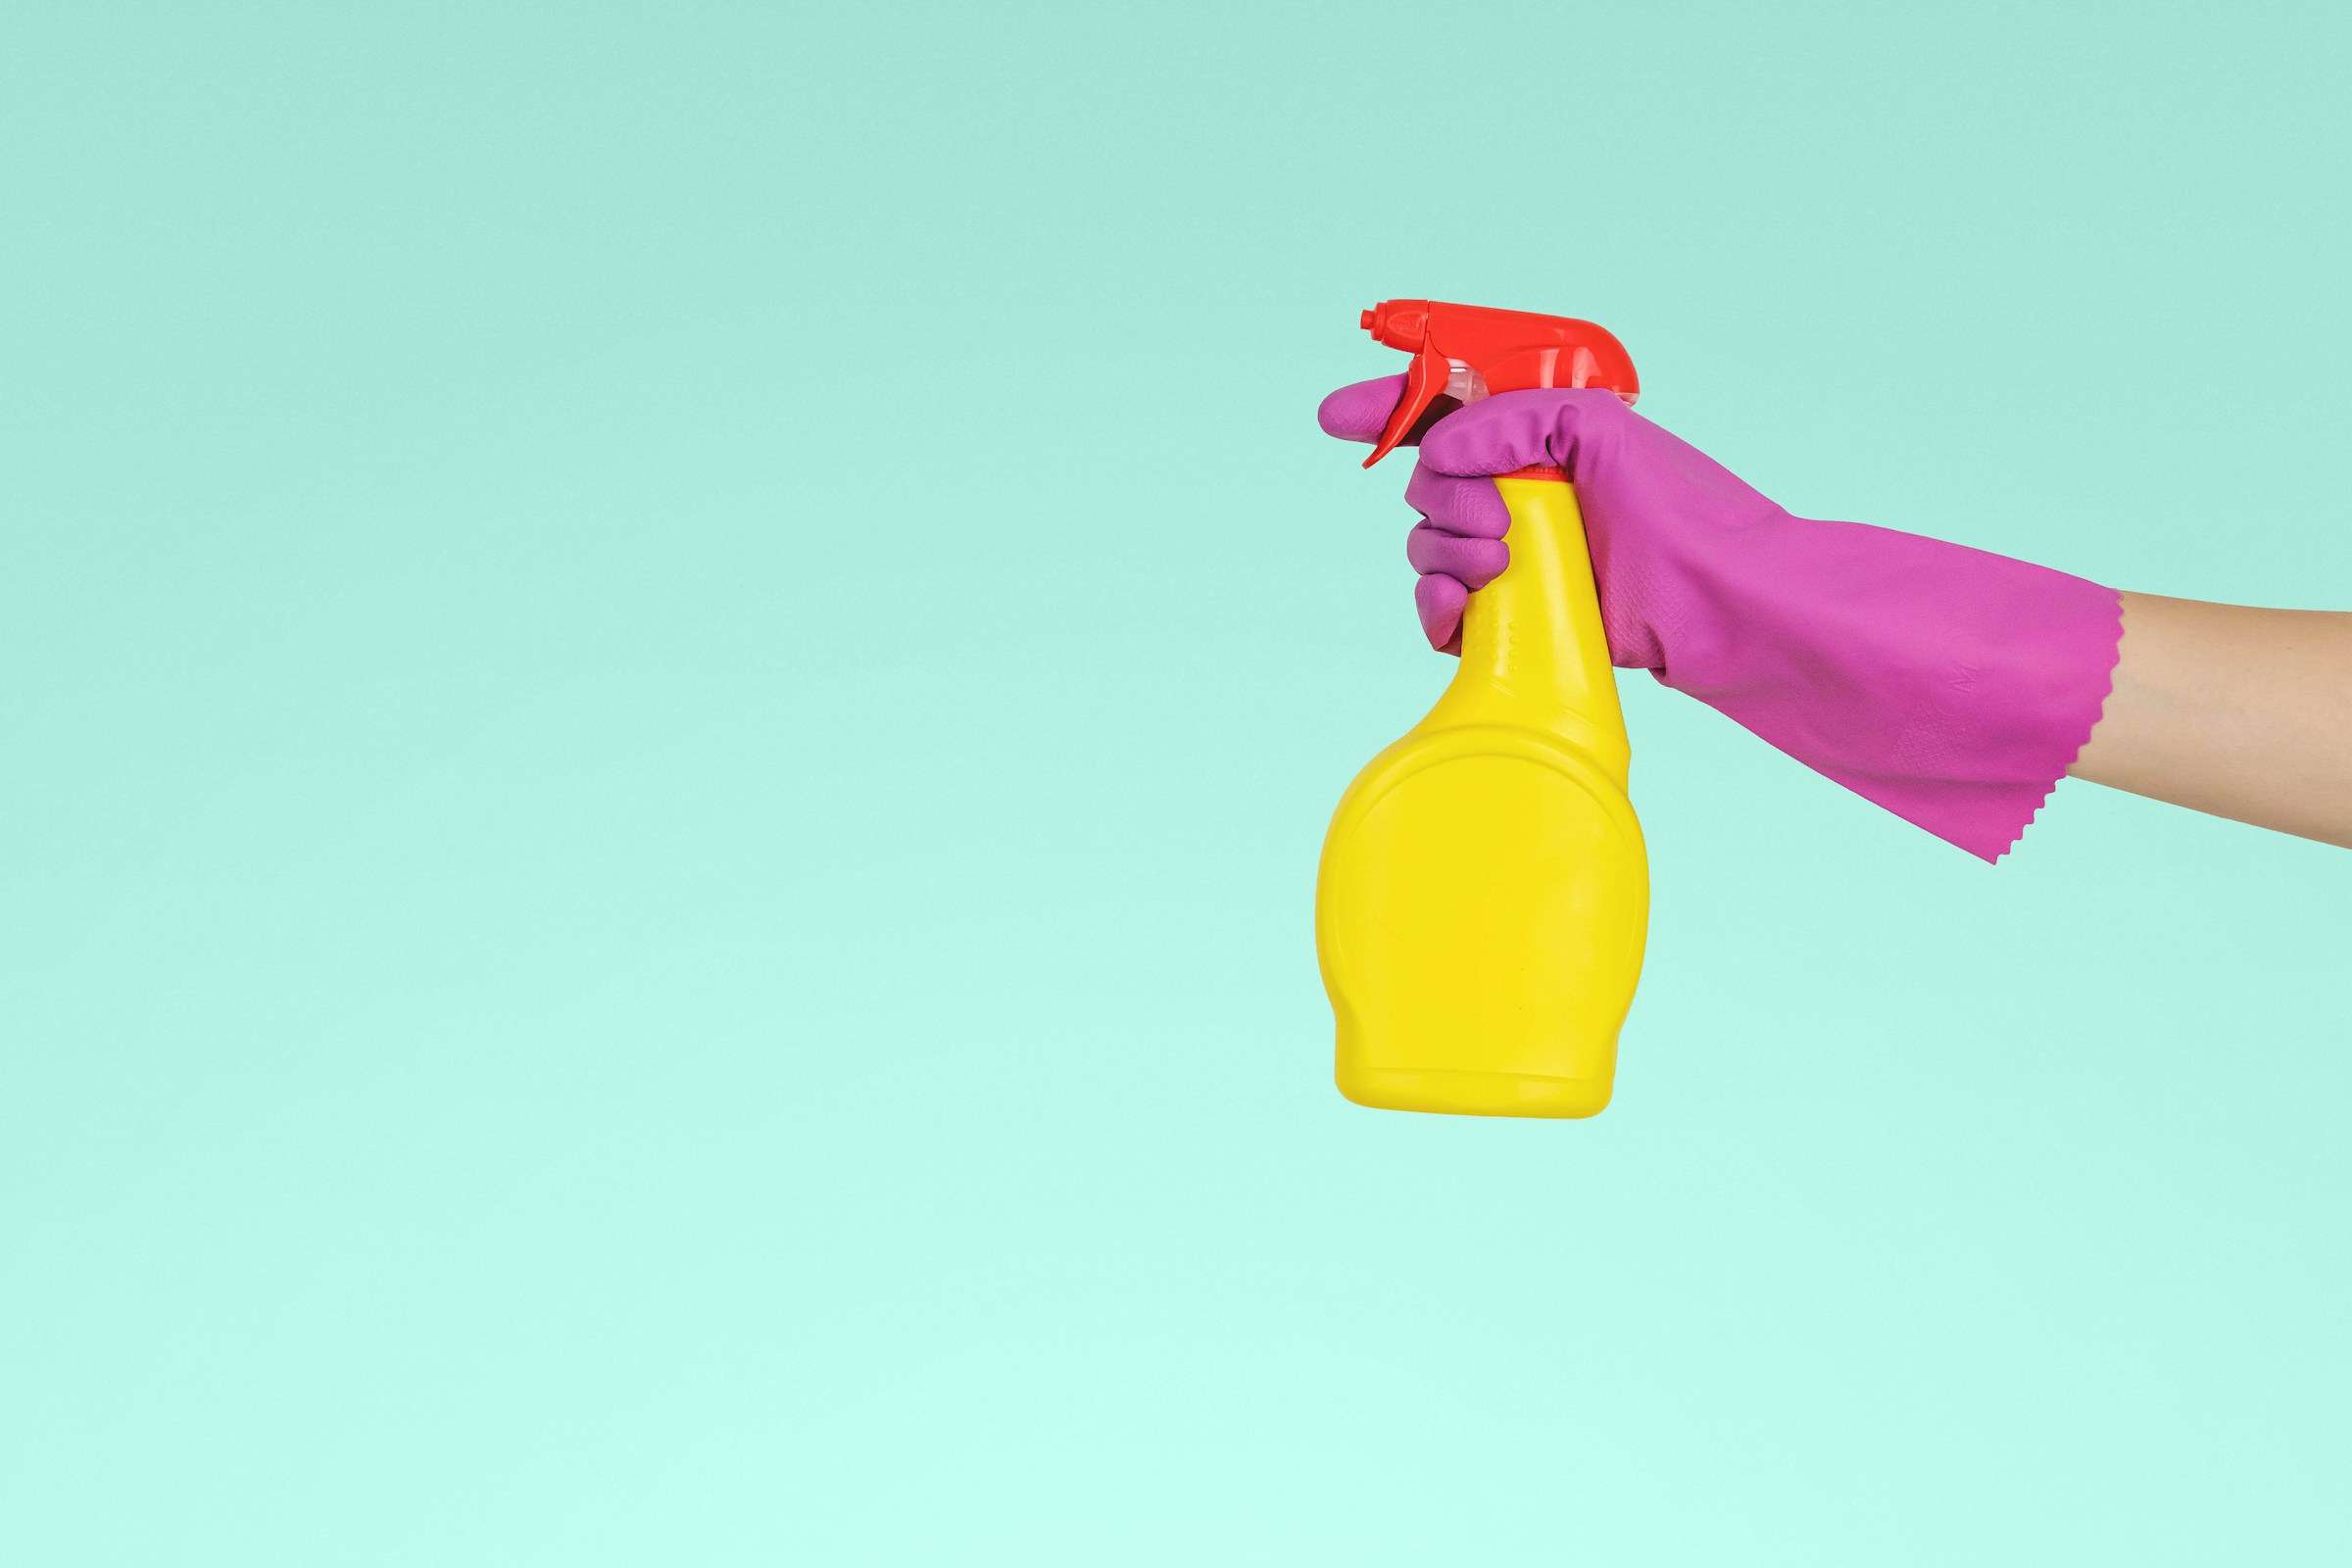 Eine Person hält eine gelbe Sprühflasche | Quelle: Unsplash